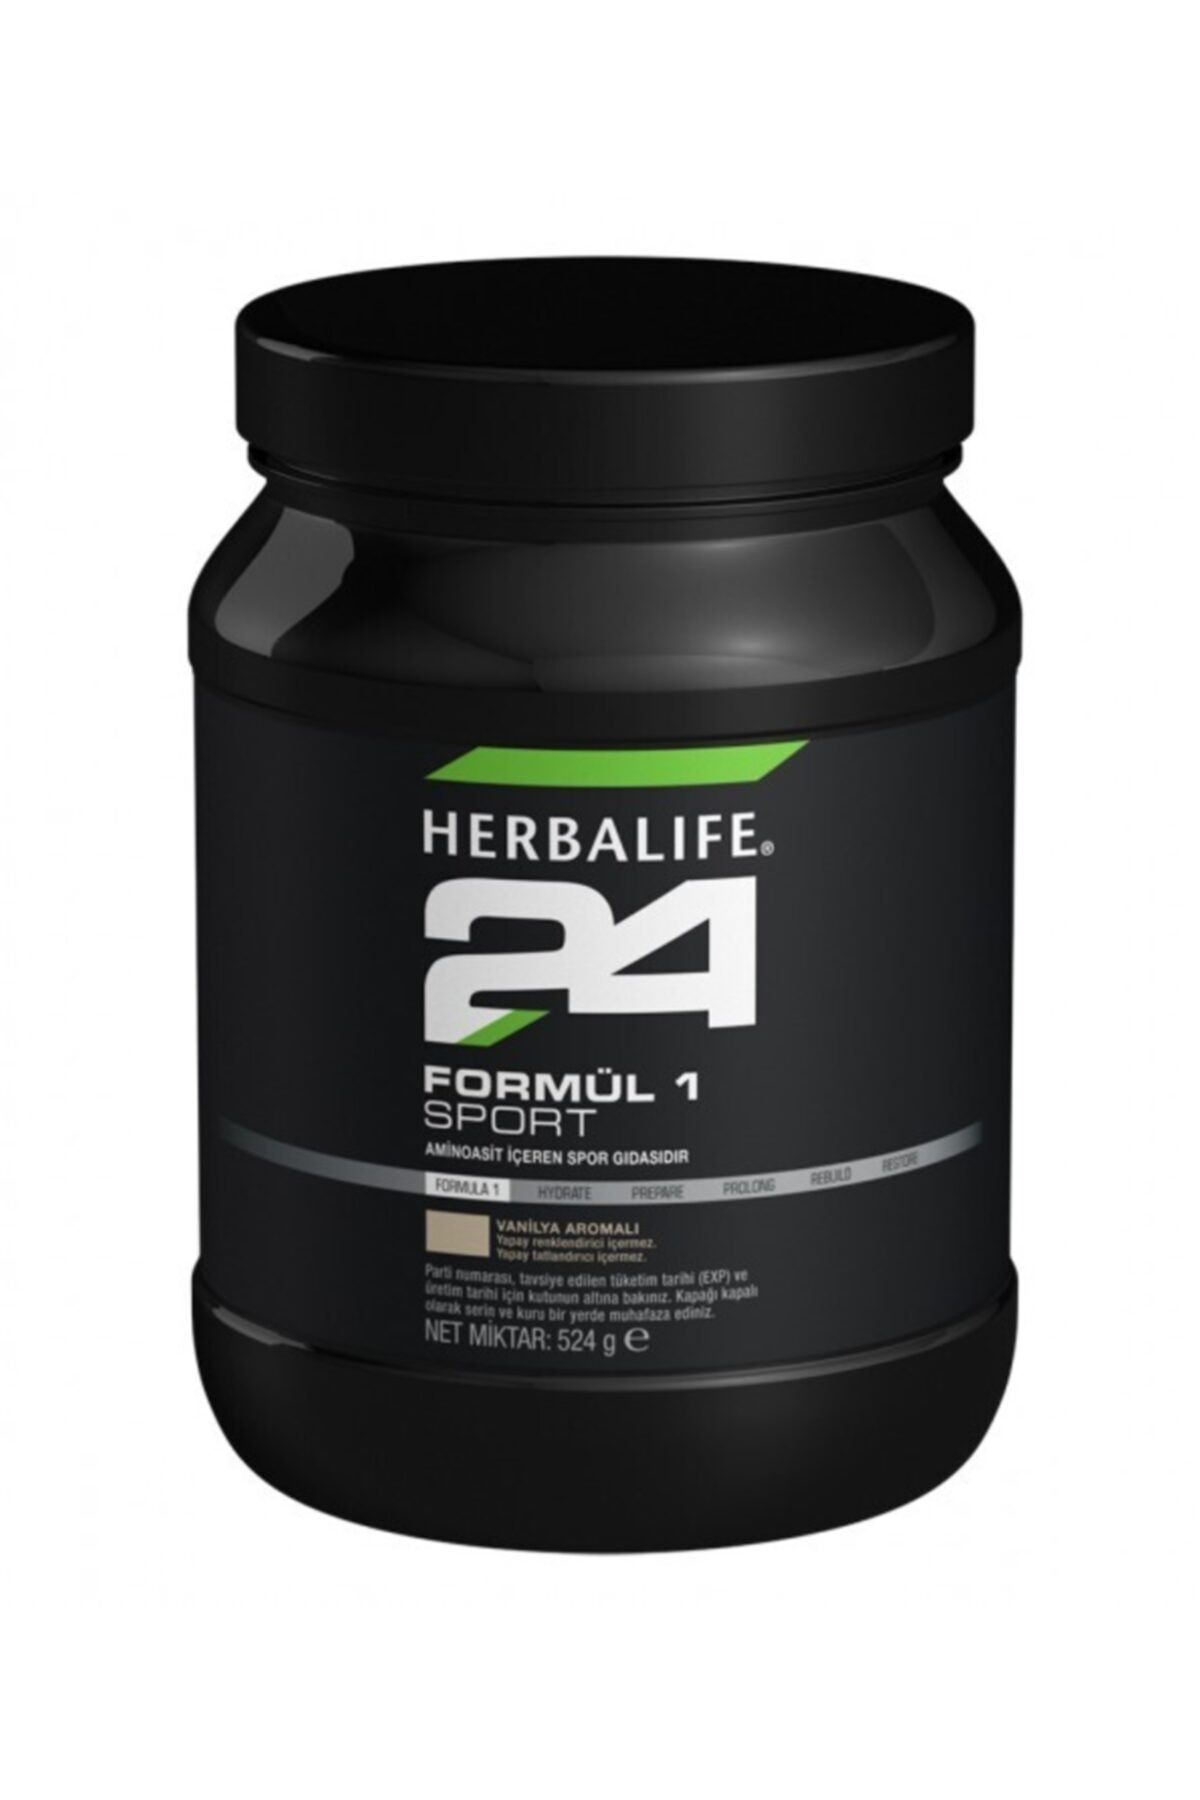 Herbalife Herbalıfe Formül 1 Sport Protein Ve Aminoasit Spor Gıdası